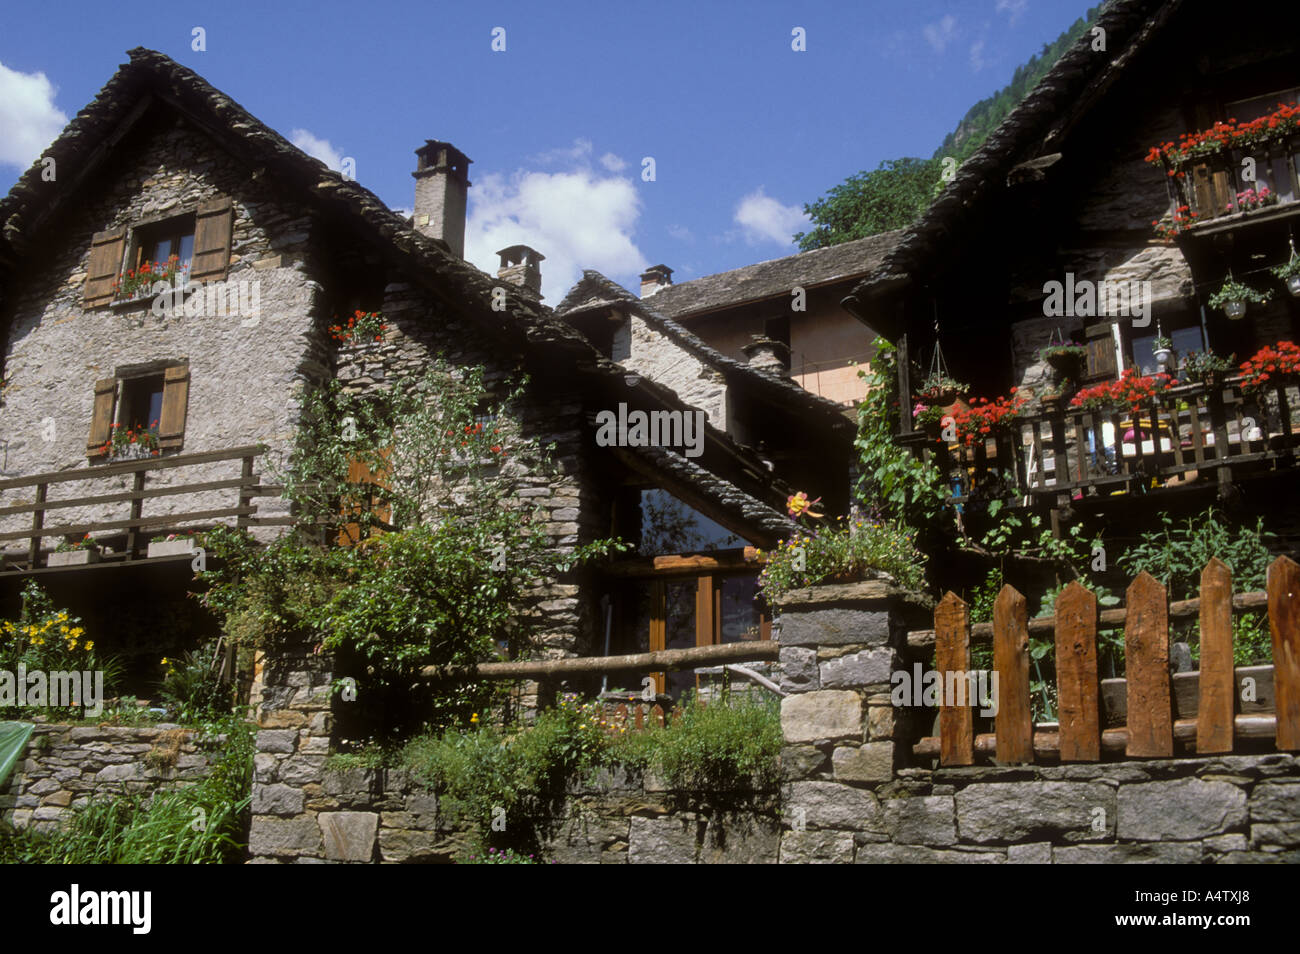 Jahrhunderte alte Häuser in der Stadt Sogogna Val Verzasca-Tal Tessin Schweiz Alpen Südschweiz Stockfoto